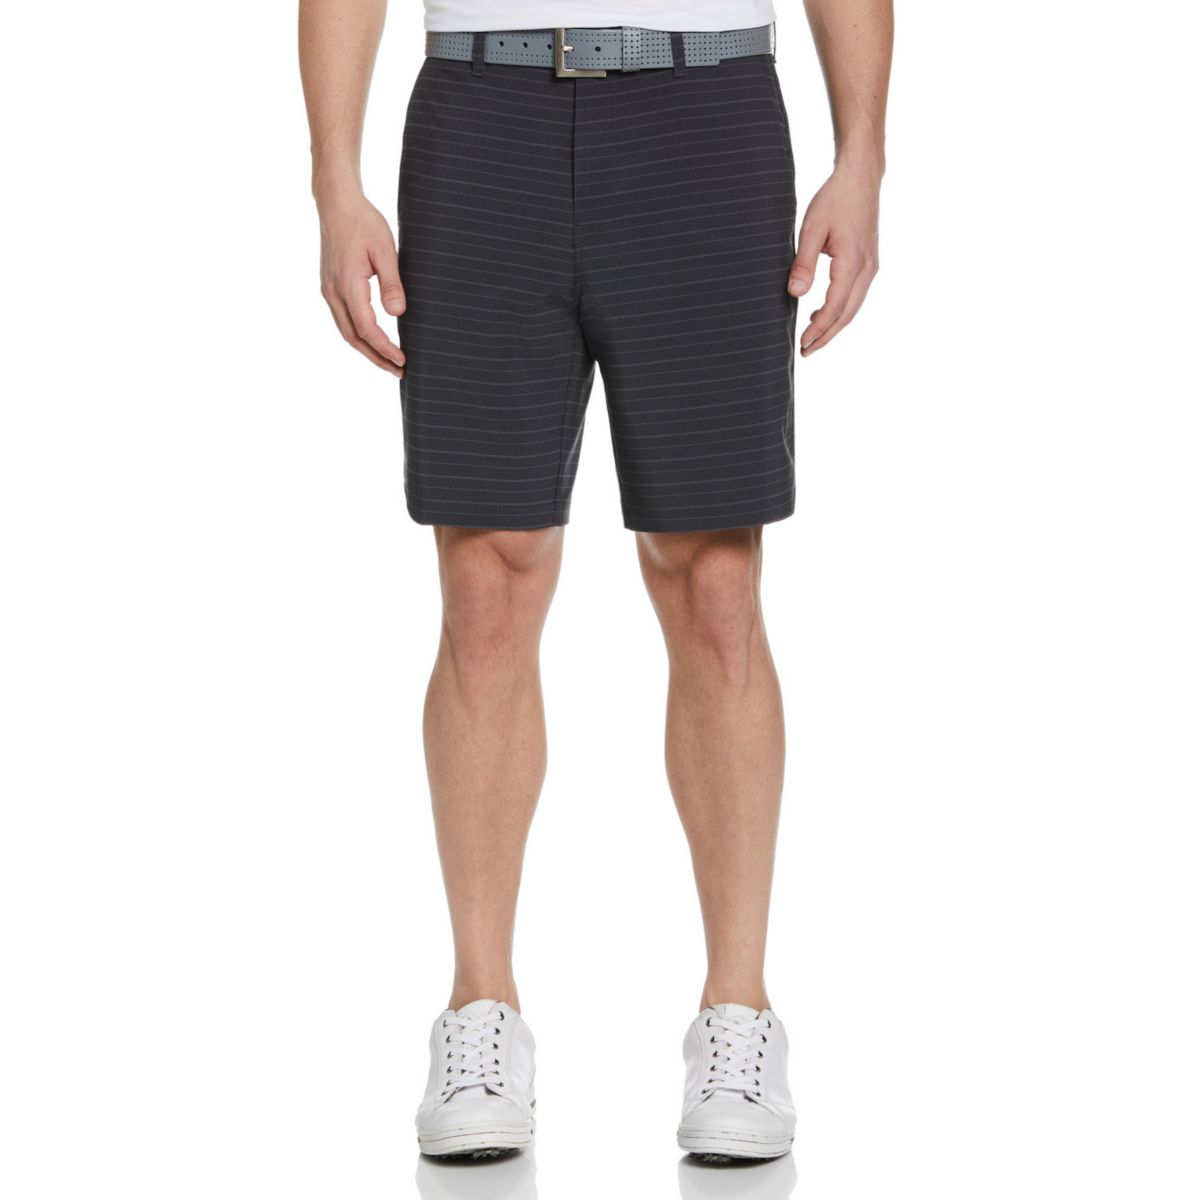 Мужские шорты для гольфа с плоским передом и горизонтальным принтом Grand Slam Grand Slam